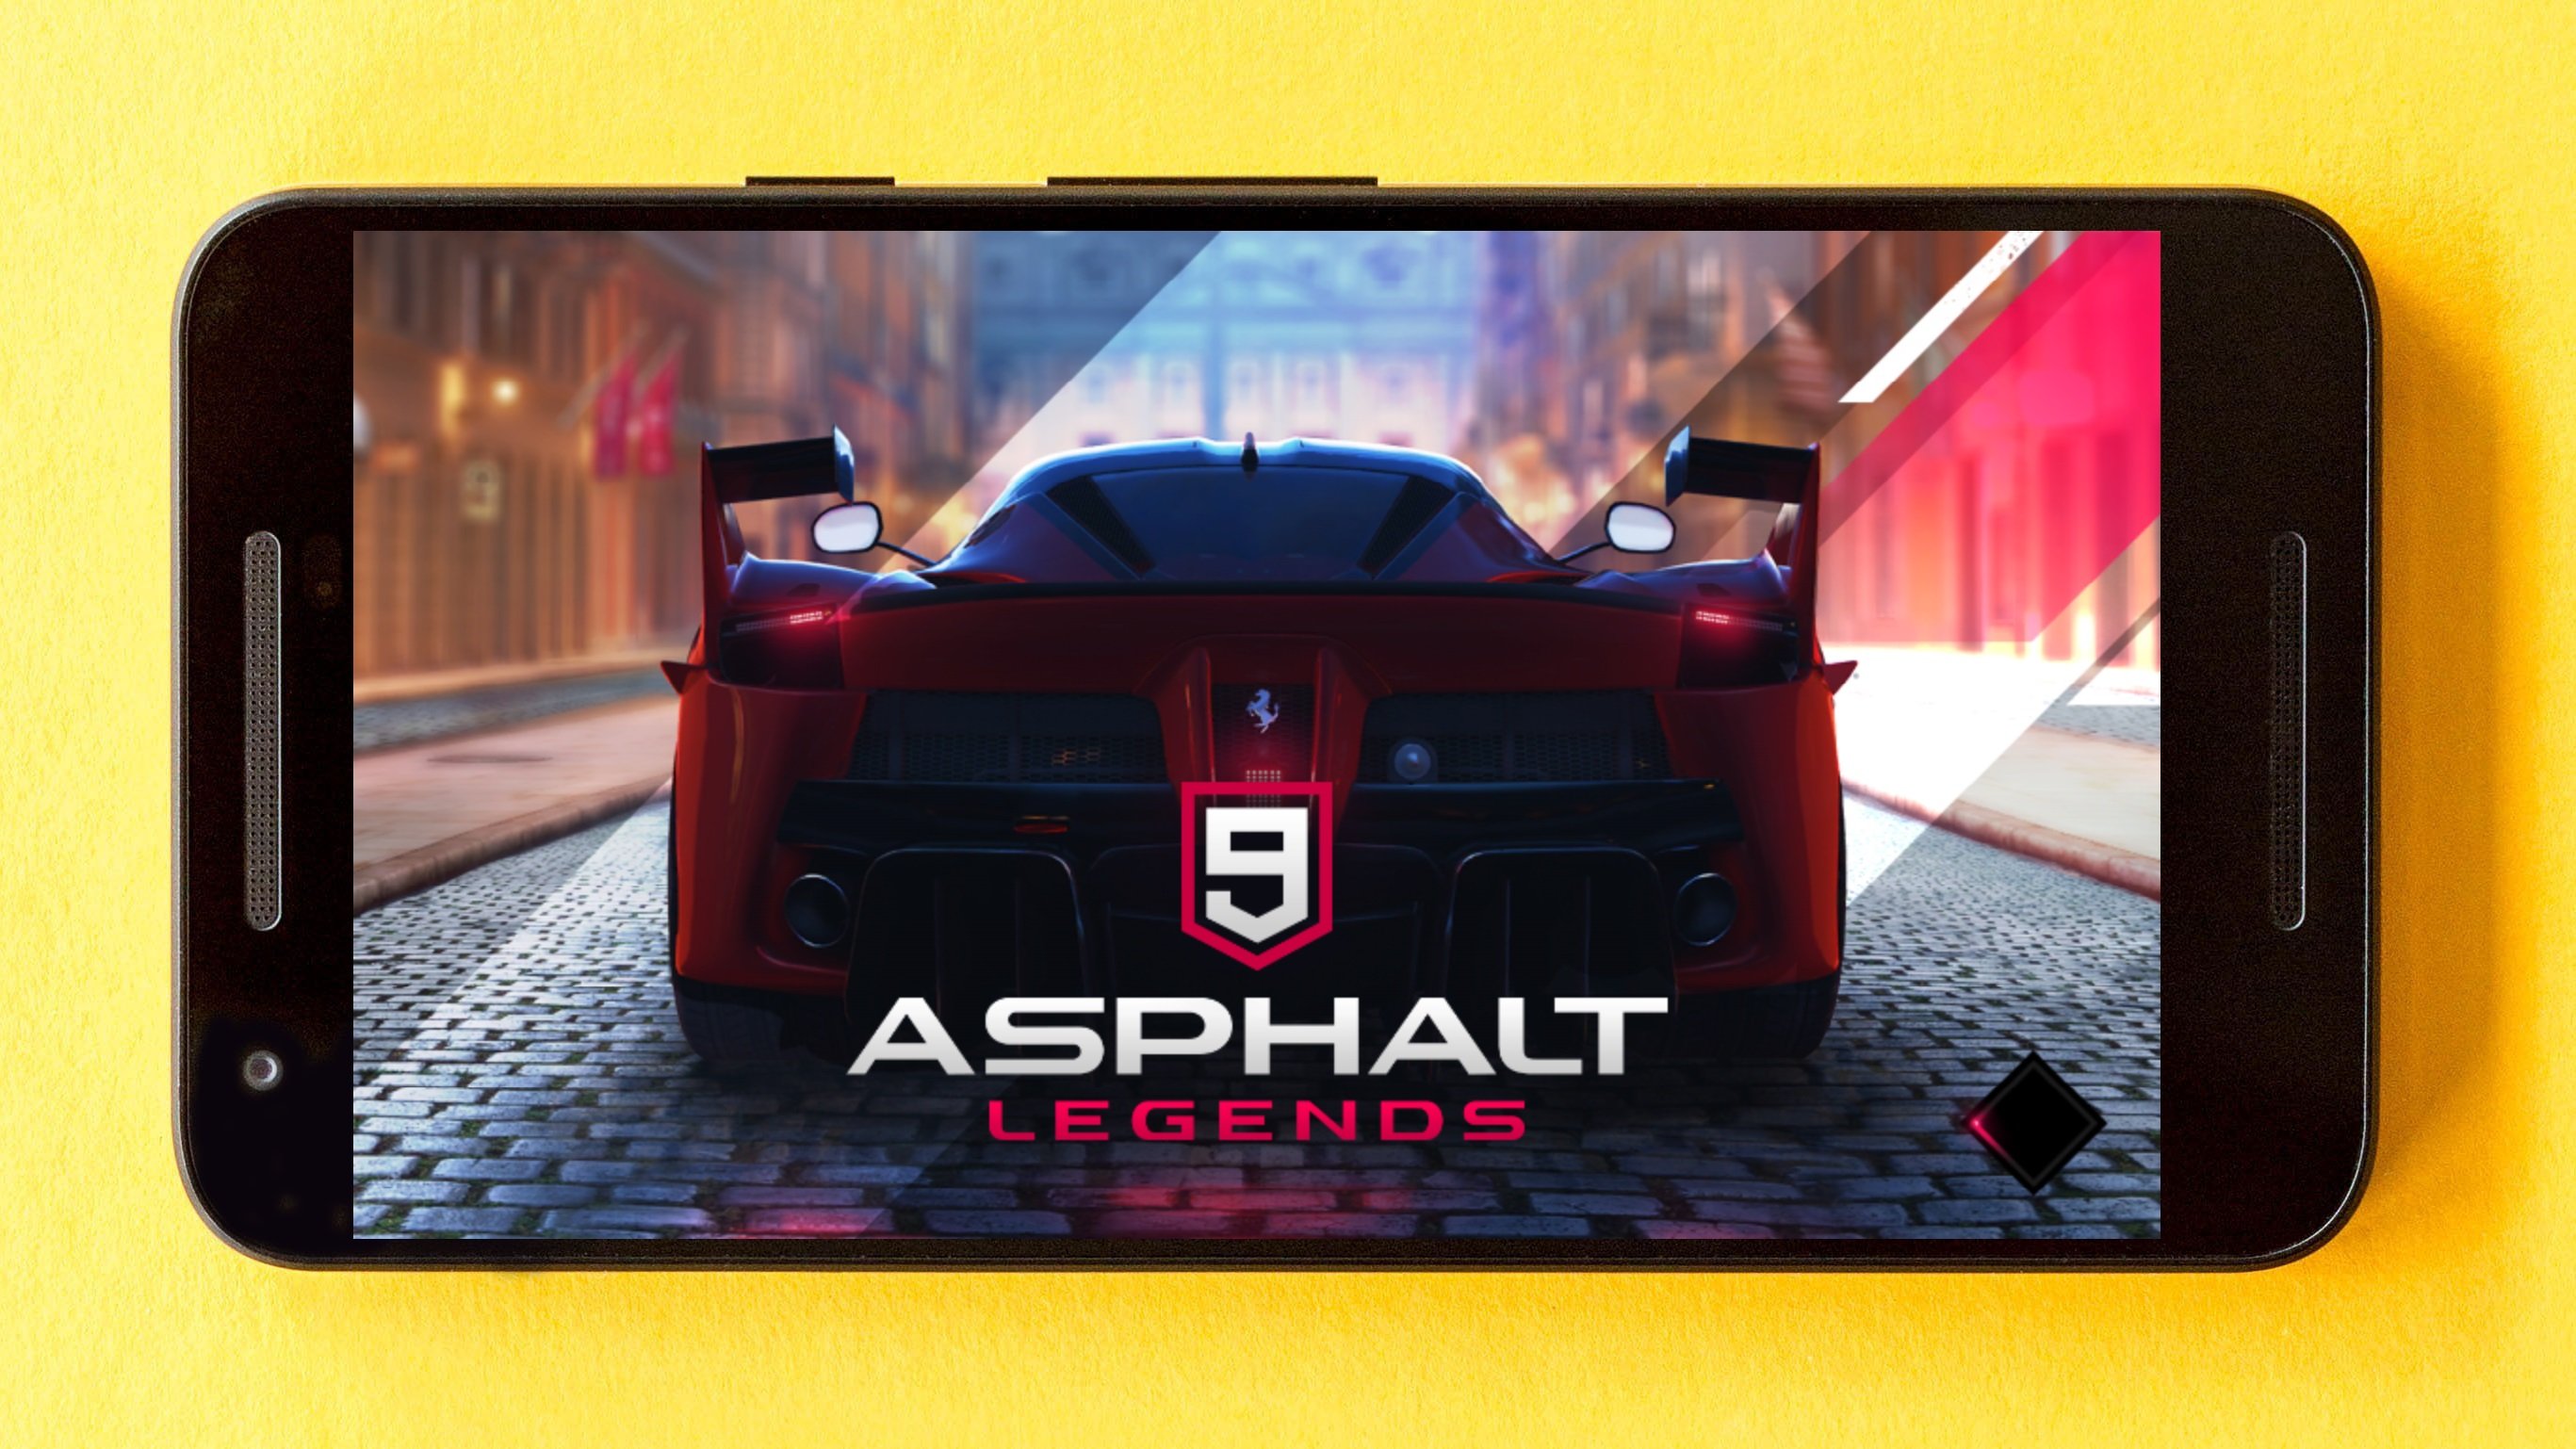 Vai baixar? Asphalt 9: Legends é anunciado para Android e iOS 